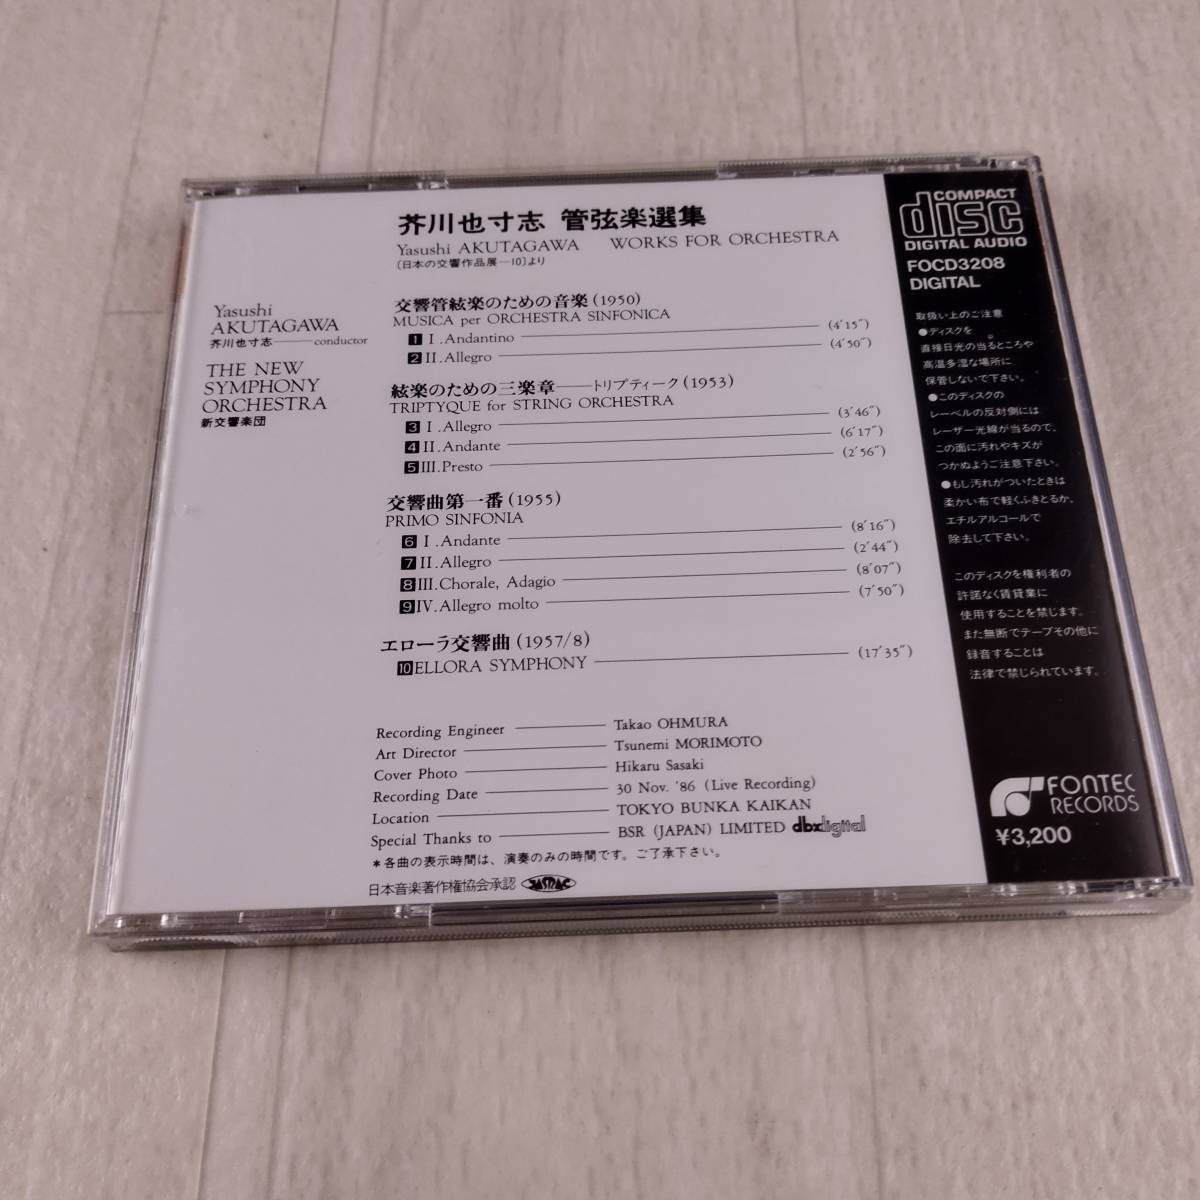 1MC1 CD 芥川也寸志 新交響楽団 芥川也寸志 管弦楽選集_画像2